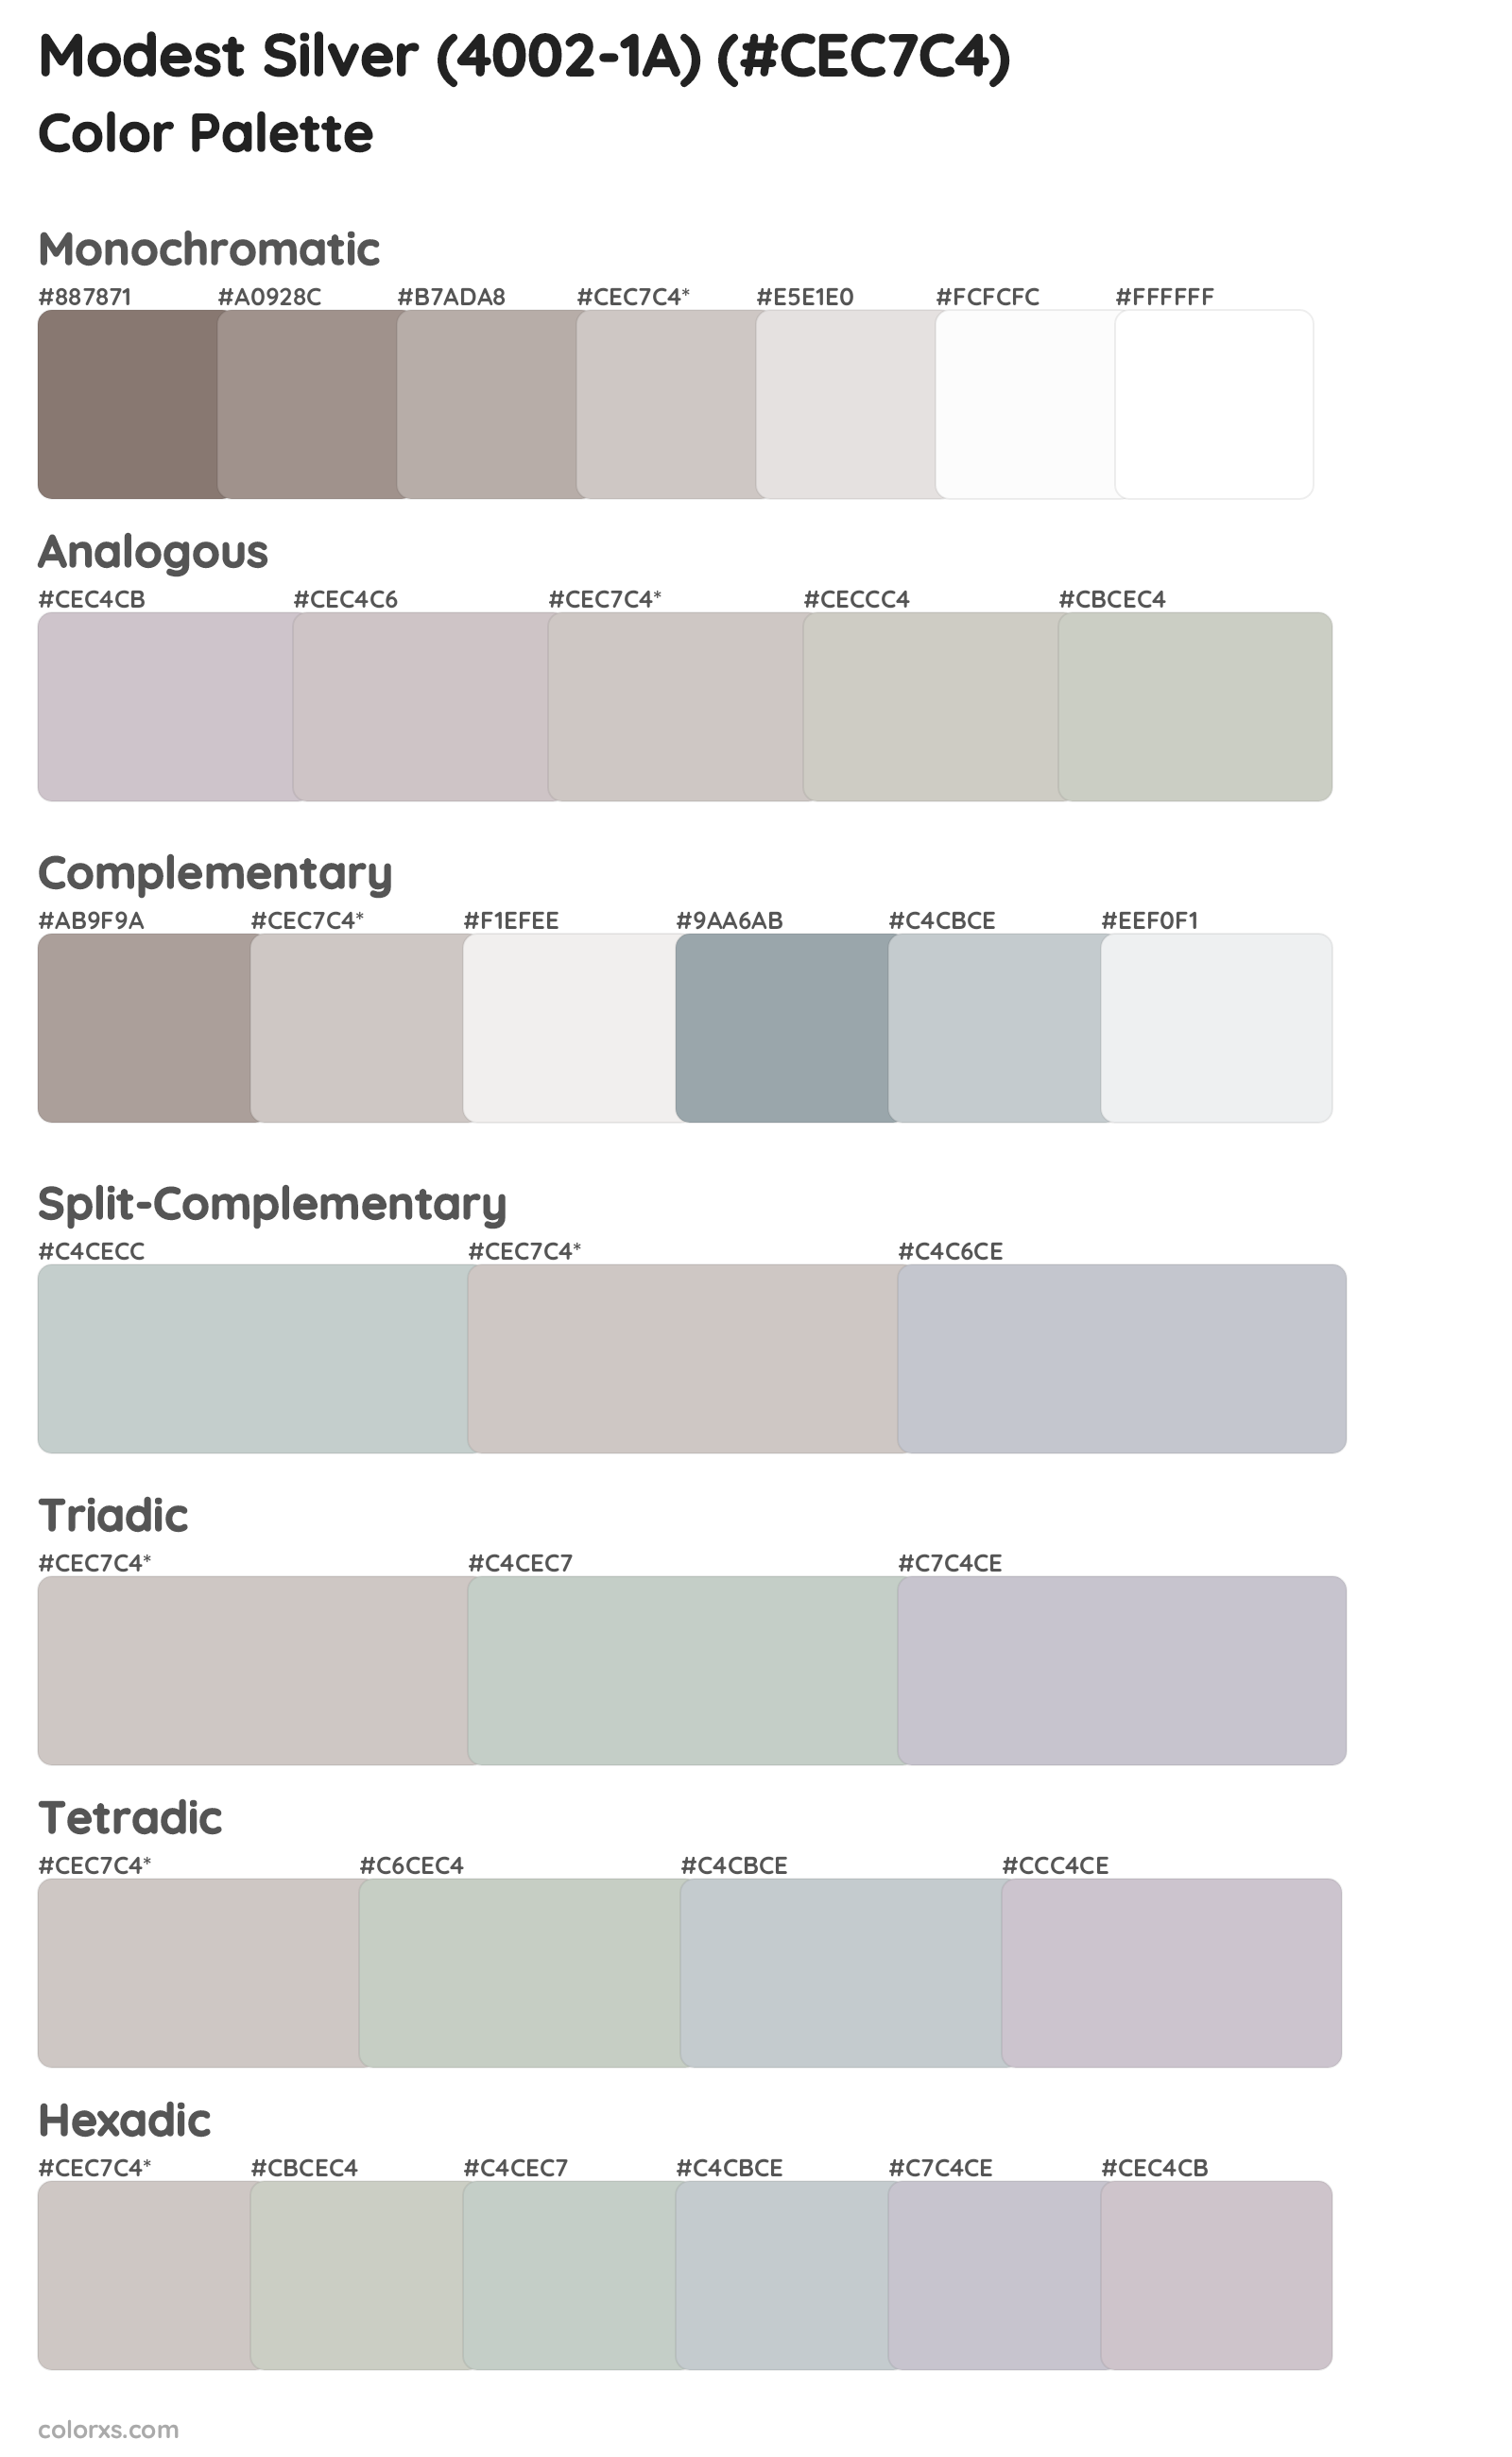 Modest Silver (4002-1A) Color Scheme Palettes